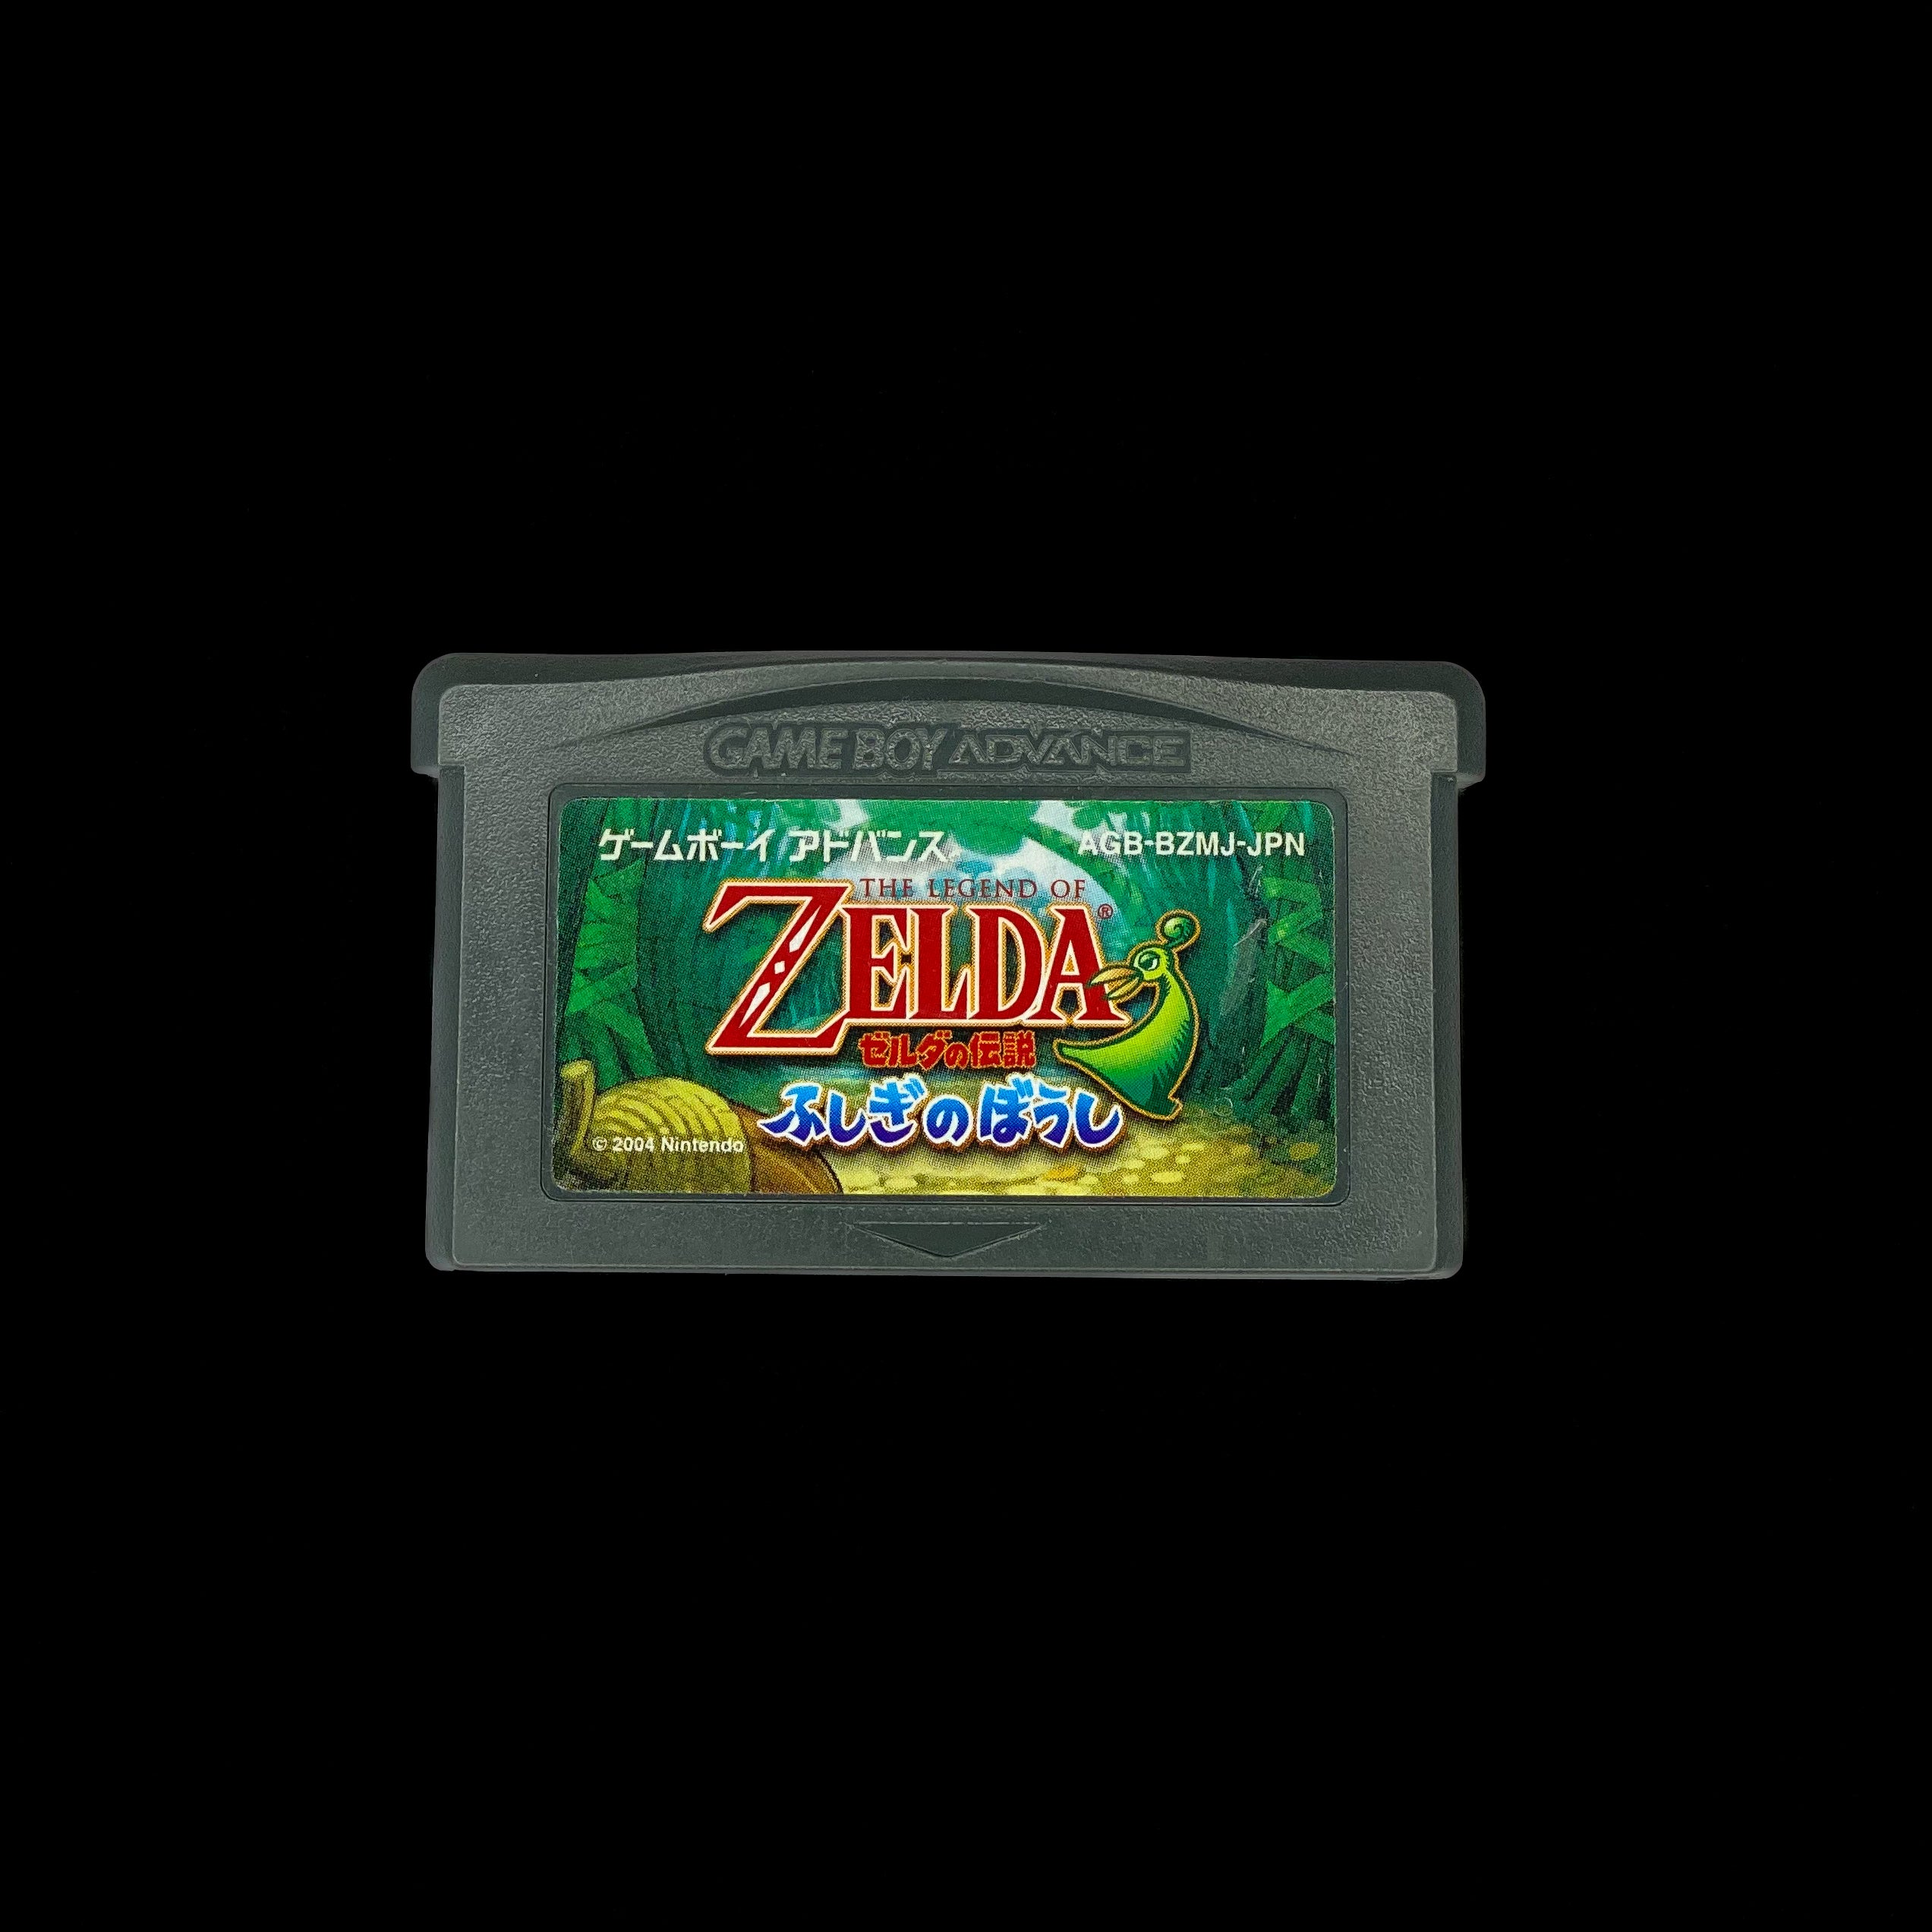 Legend of Zelda: Fushigi no Boushi (Japanese)